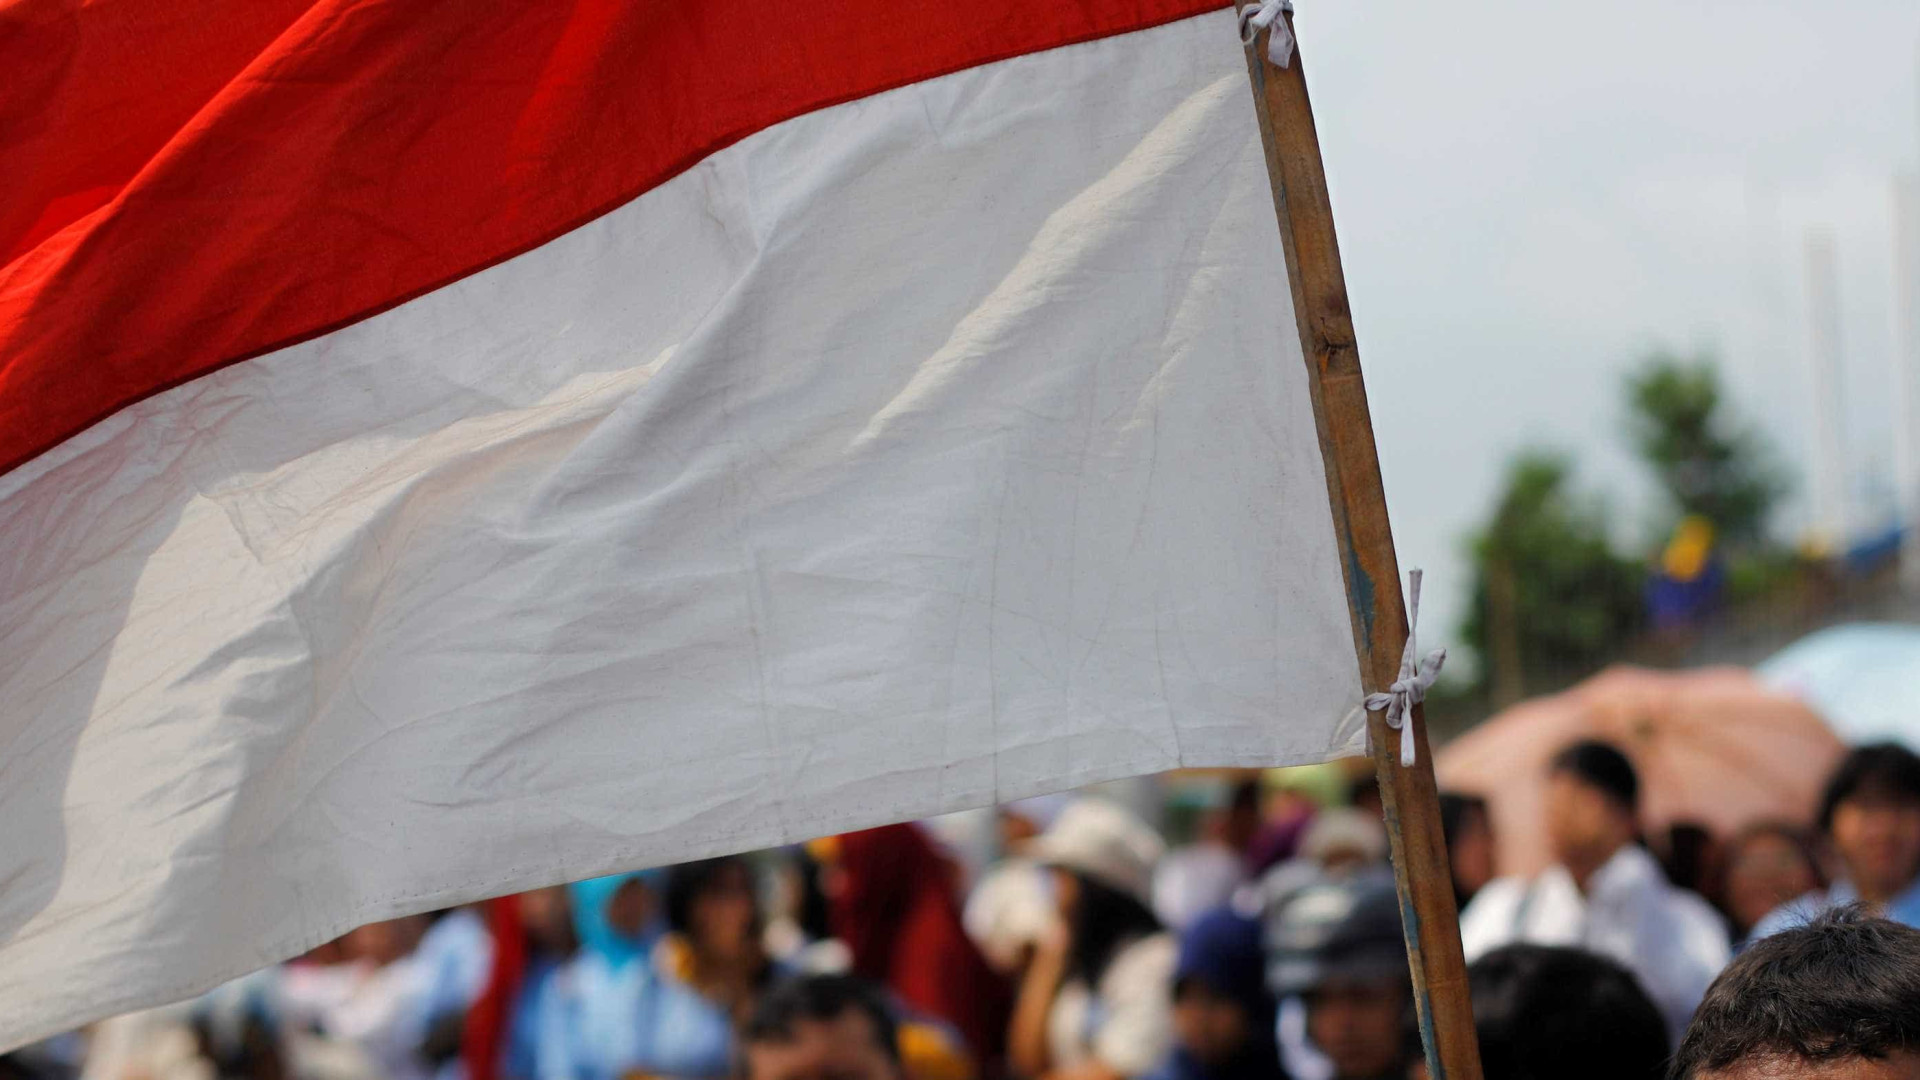 Atentados suicidas em igrejas na Indonésia deixam 9 mortos e 40 feridos